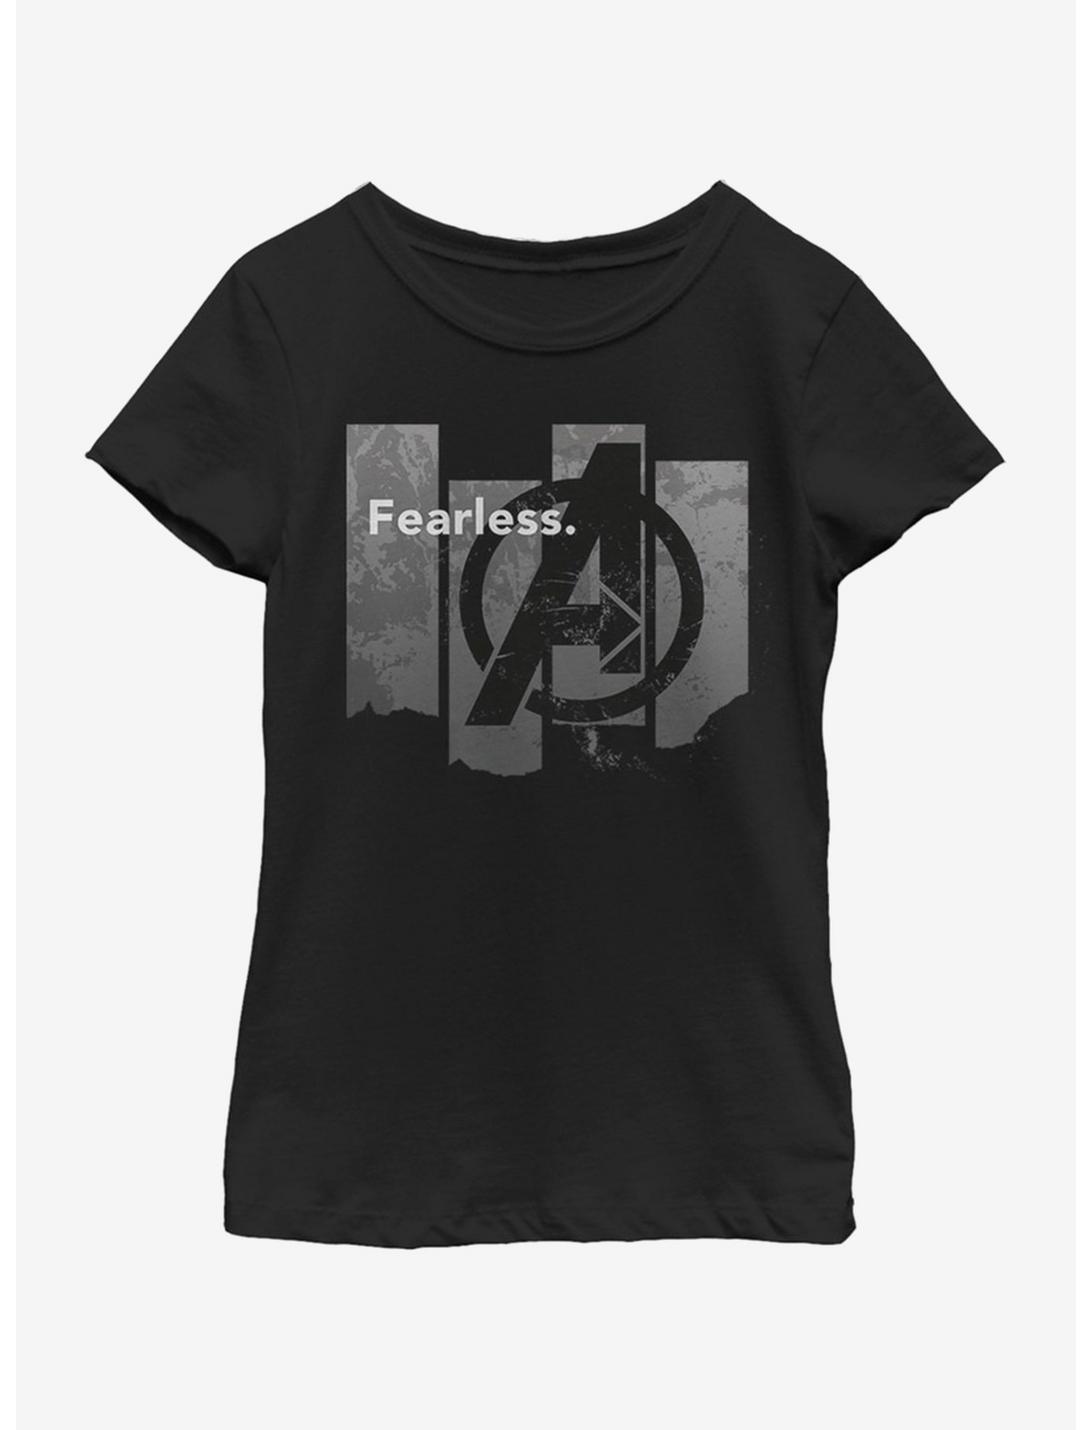 Marvel Avengers: Endgame Fearless Youth Girls T-Shirt, BLACK, hi-res